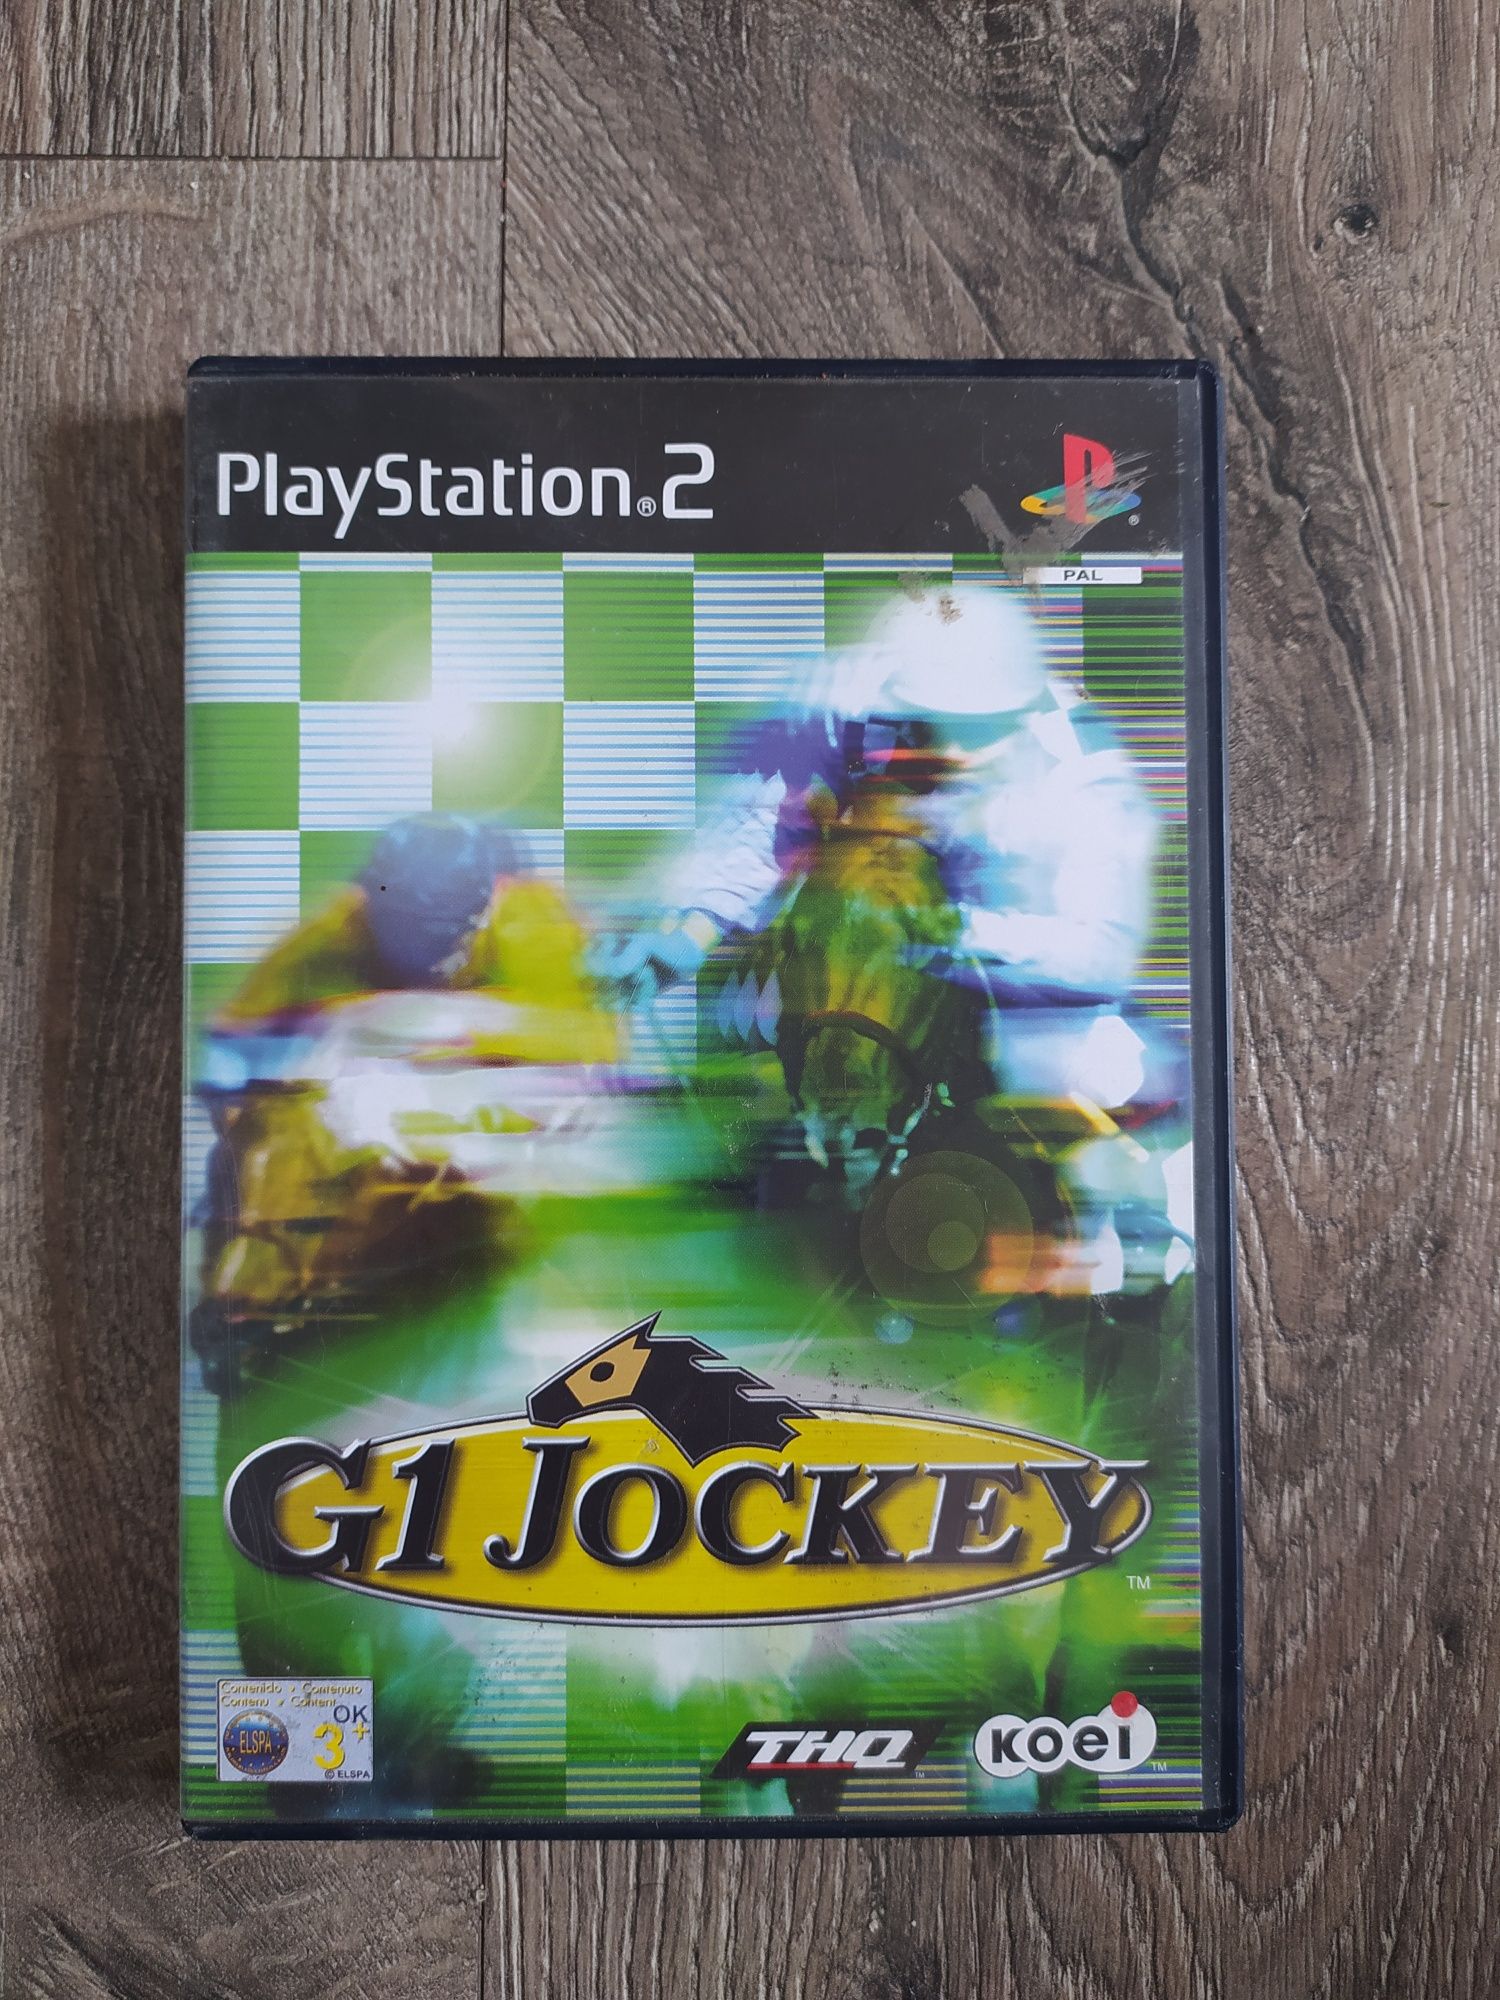 Gra PS2 G1 Jockey Wysyłka w 24h